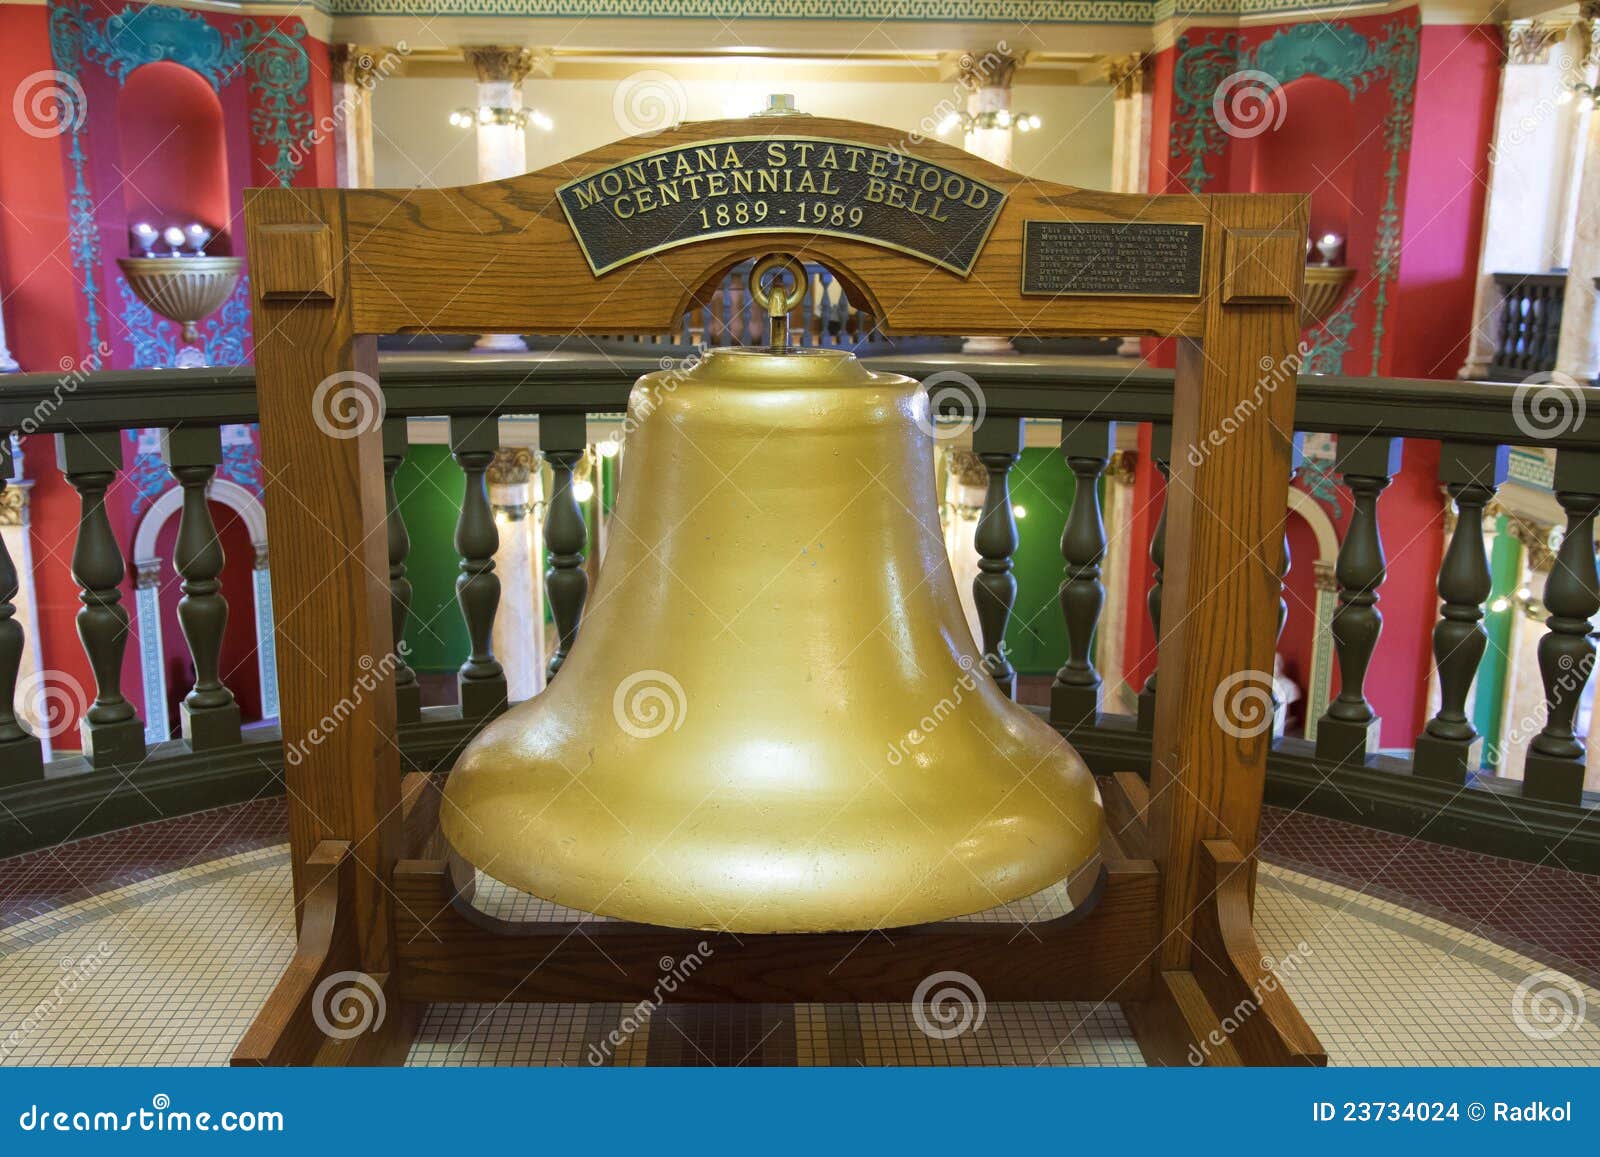 centennial bell